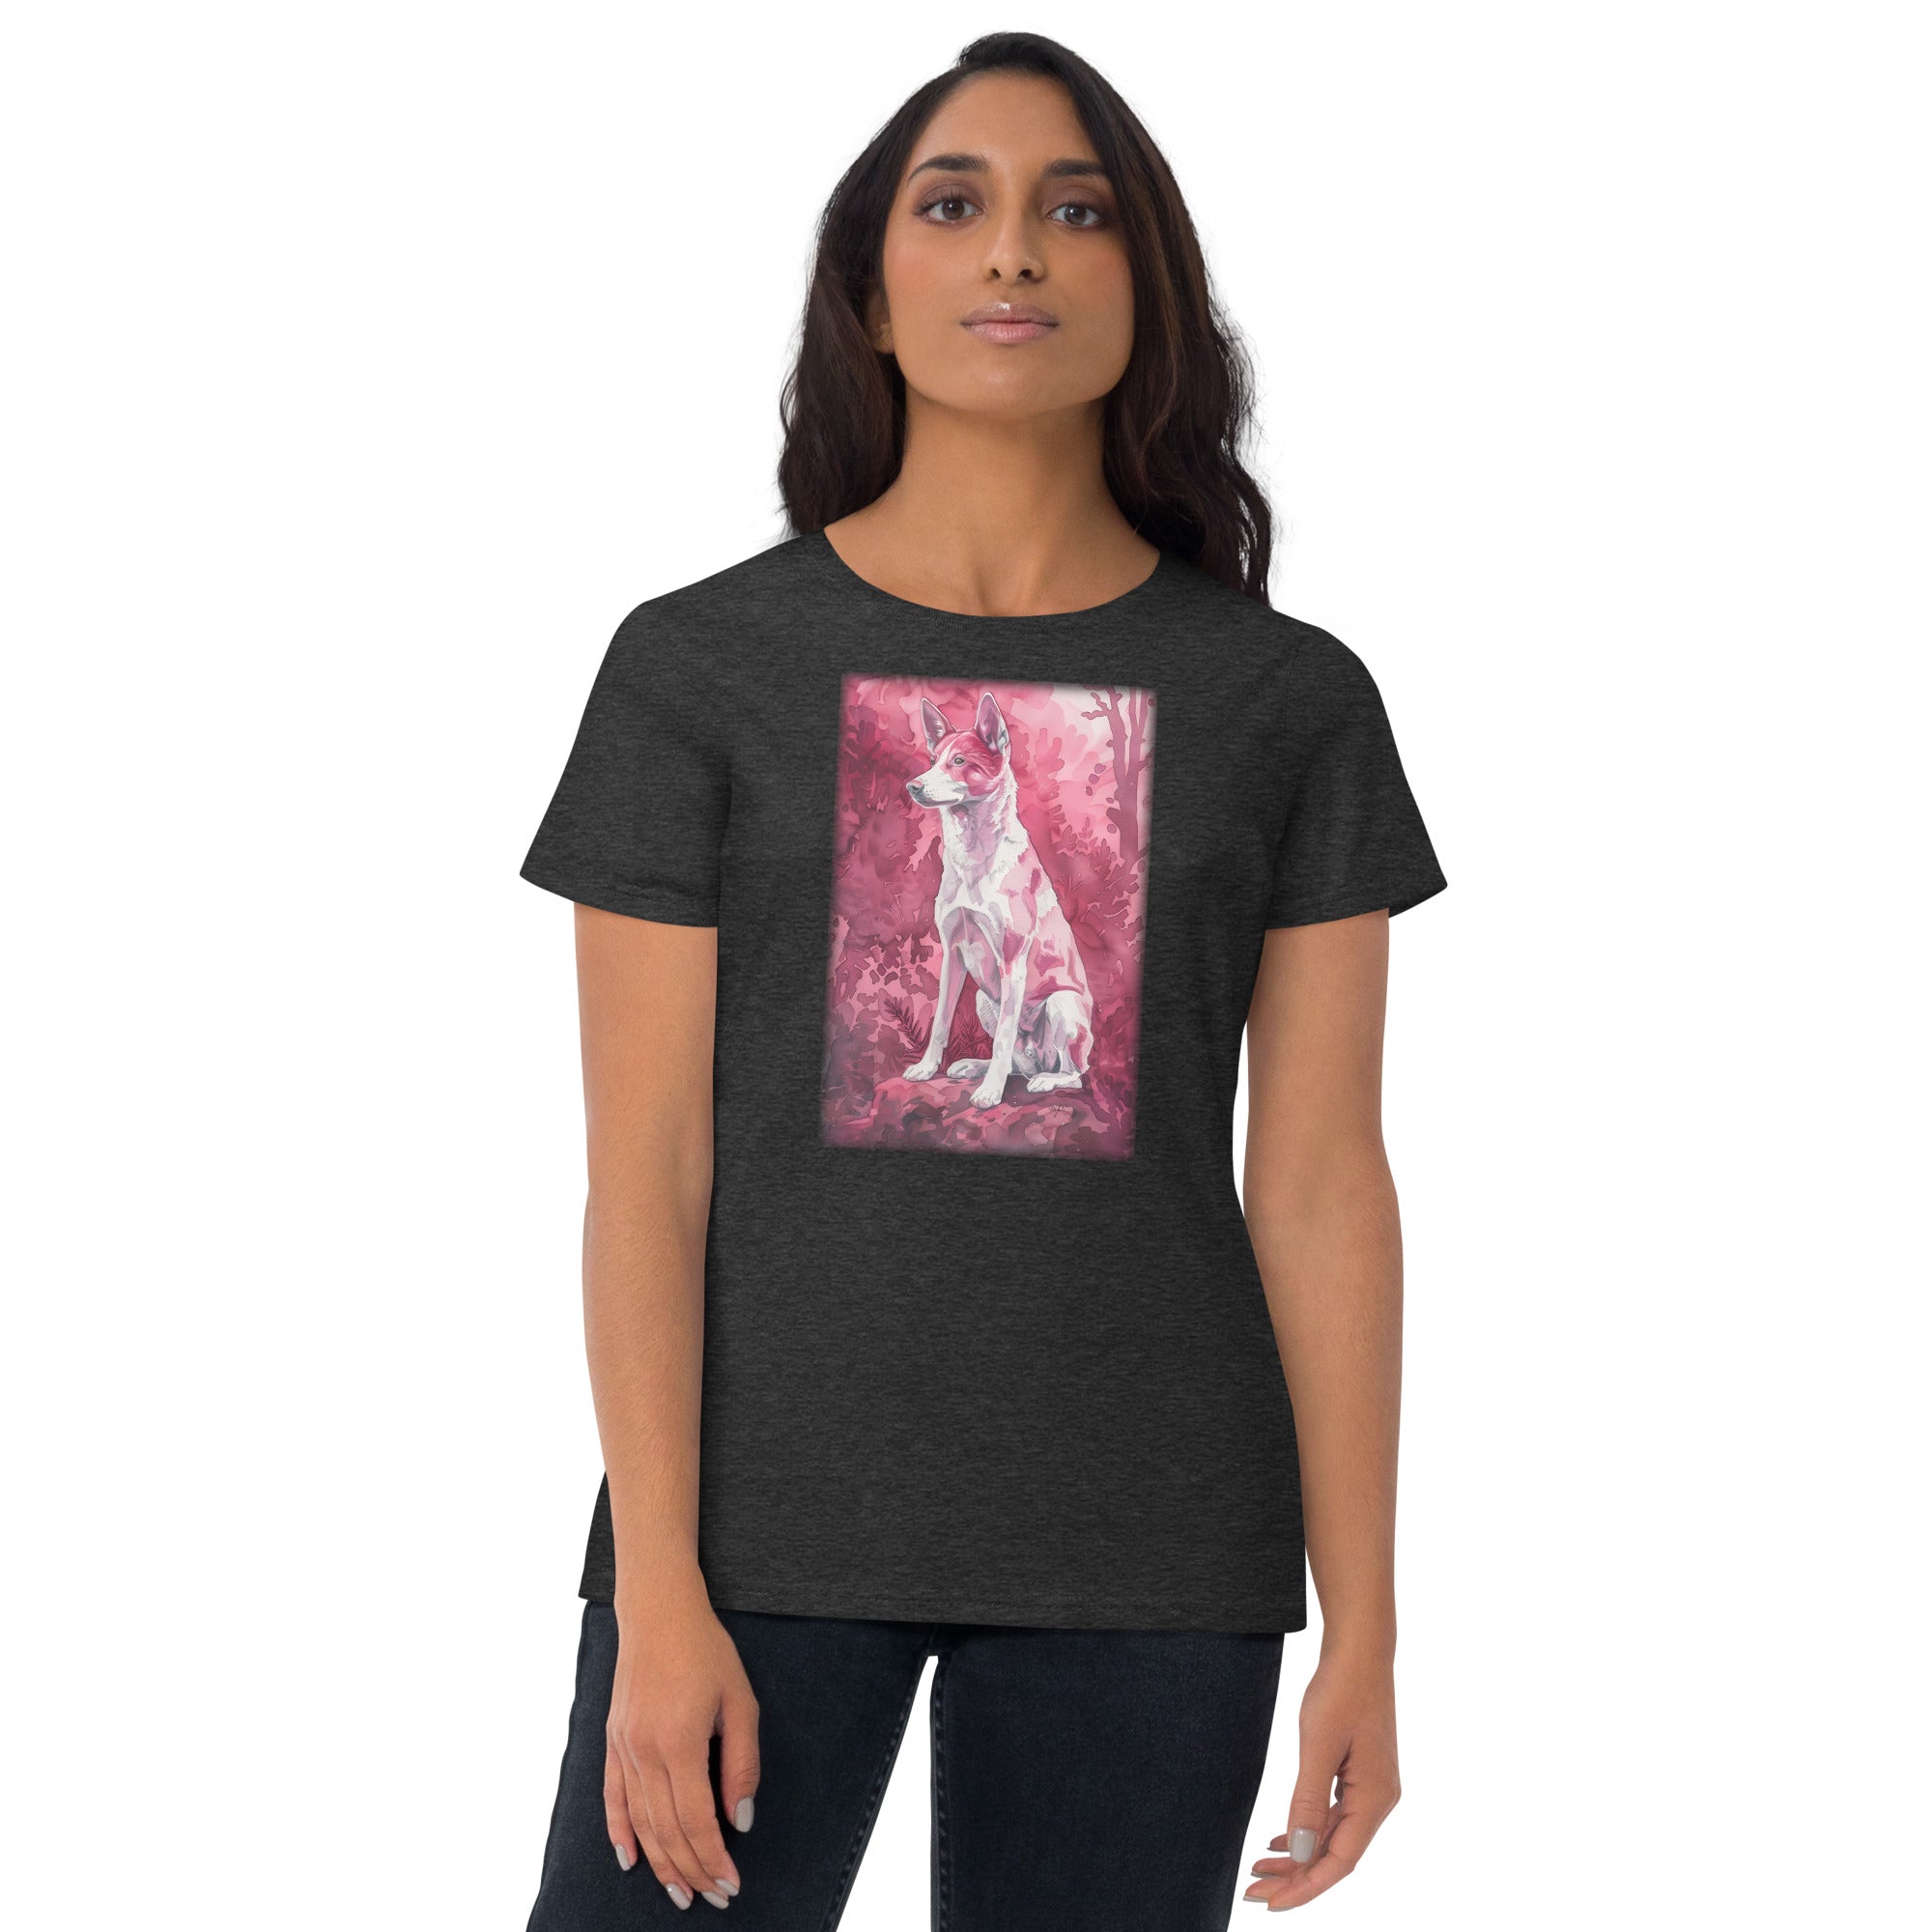 Canaan Dog Women's short sleeve t-shirt